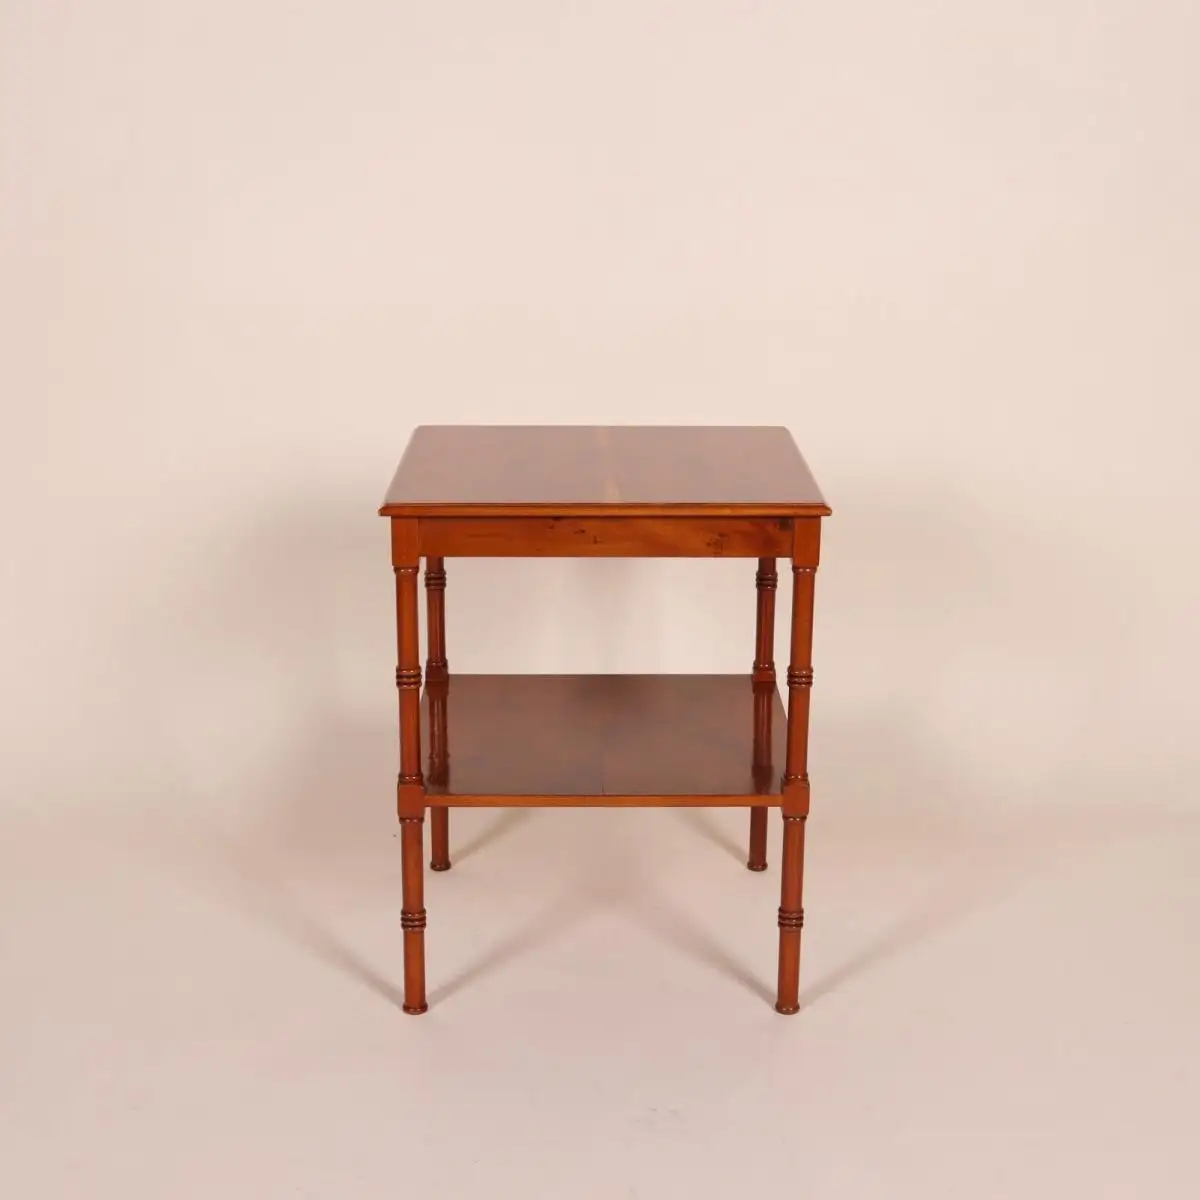 Englische Möbel Original Stilmöbel Heldense Eibe Tisch Beistelltisch Lampentisch 4